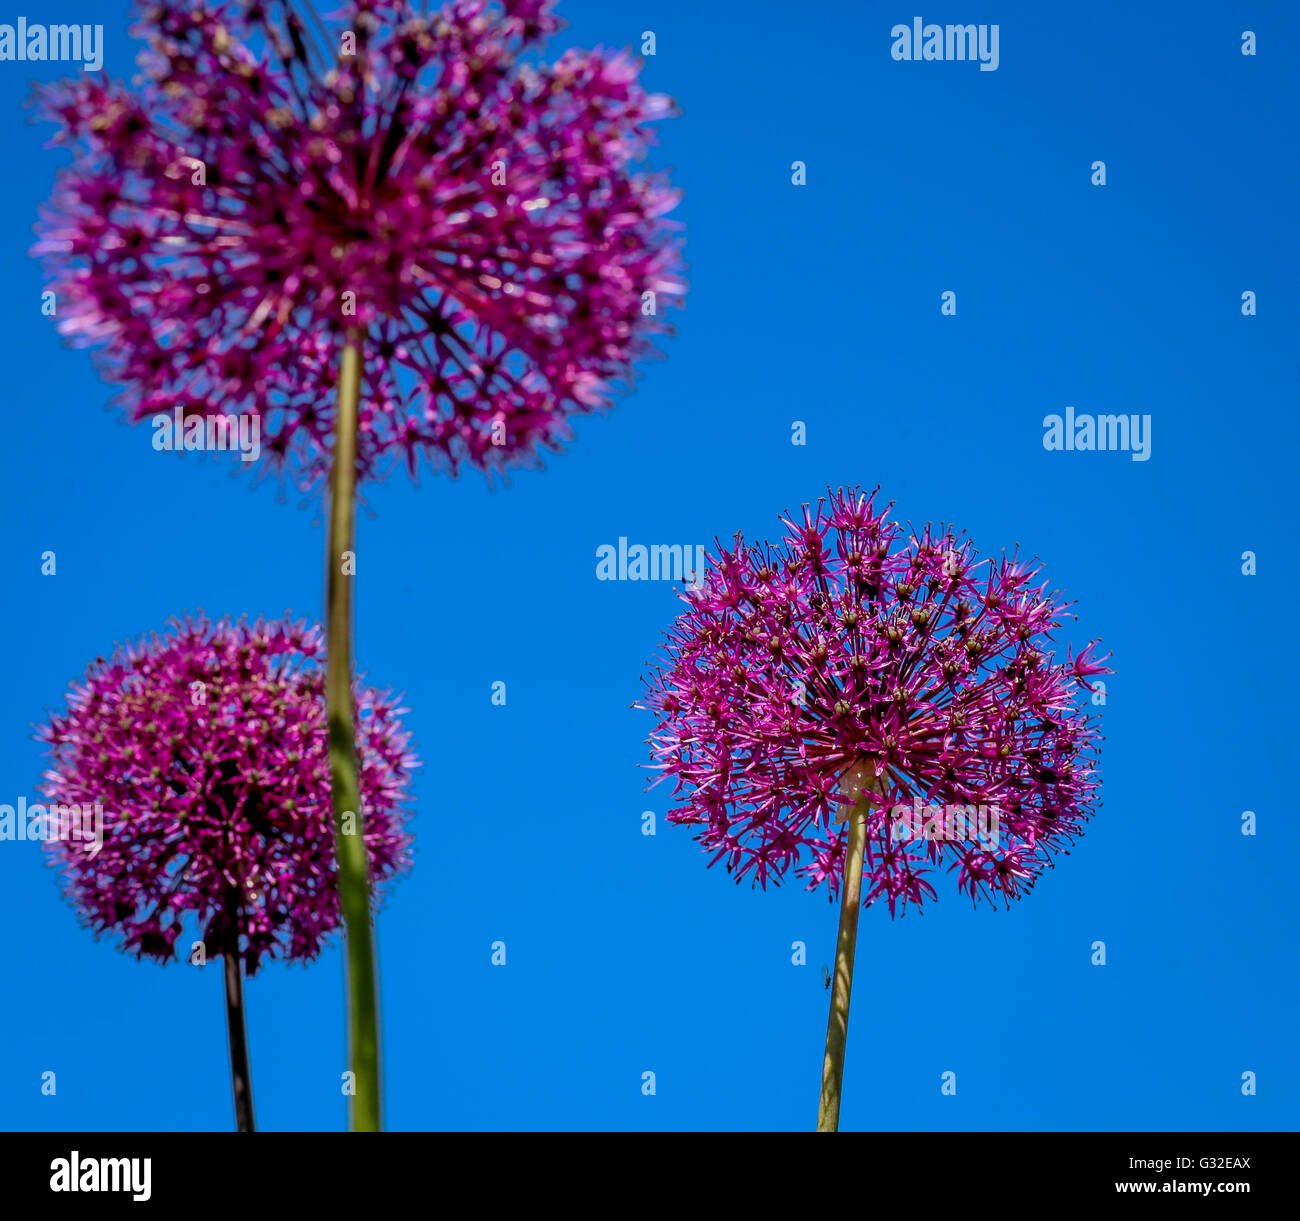 Allium fiore che sboccia, porro gigante (Allium giganteum) cielo blu sullo sfondo Foto Stock